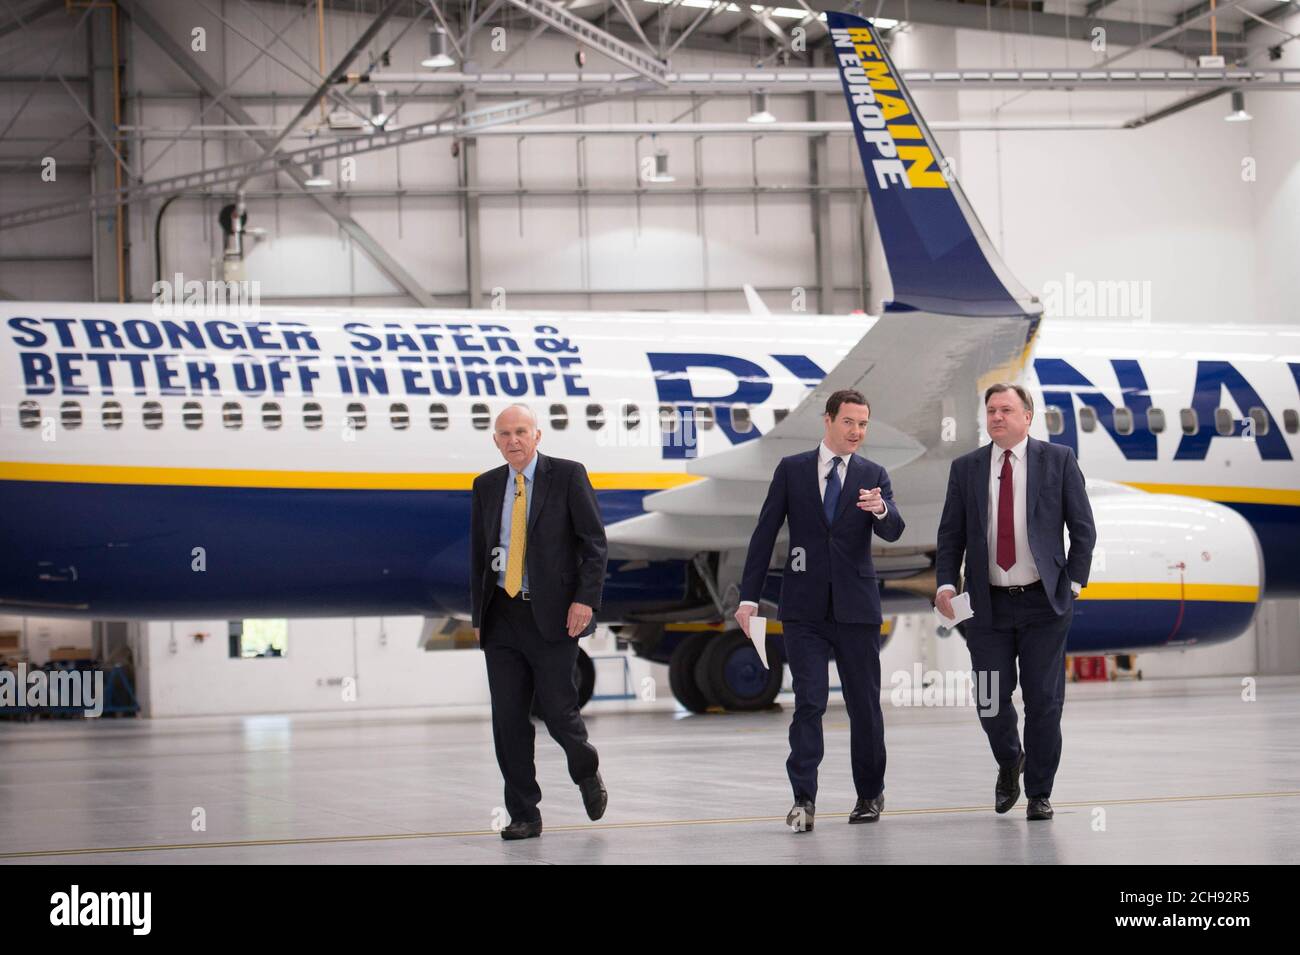 Il Cancelliere dello scacchiere George Osborne (centro) è affiancato dagli ex avversari ed Balls (destra) e Sir vince Cable, nell'hangar Ryanair all'aeroporto di Stansted, dove ha affermato che 450 posti di lavoro e quasi Ã‚Â£1 miliardo di investimenti annunciati da Ryanair sarebbero "a rischio se lasciassimo l'UE". Foto Stock